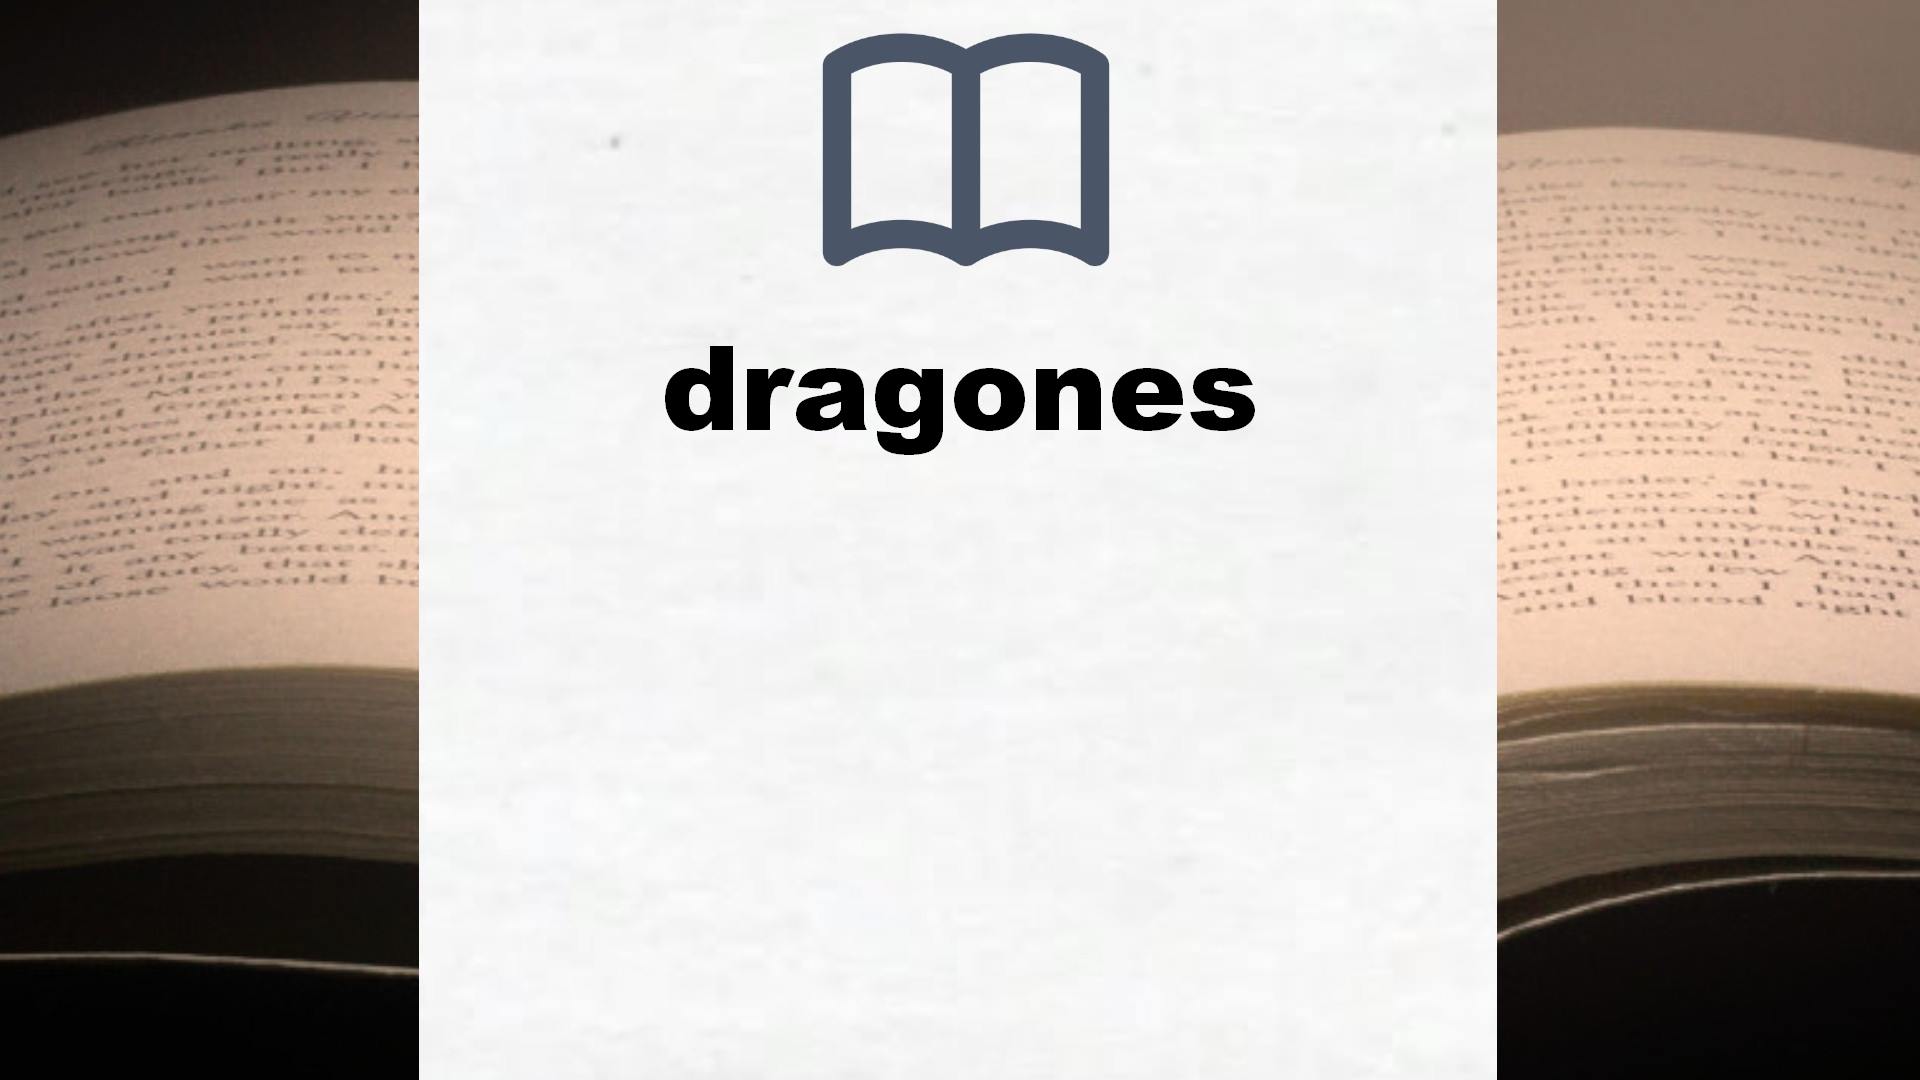 Libros sobre dragones